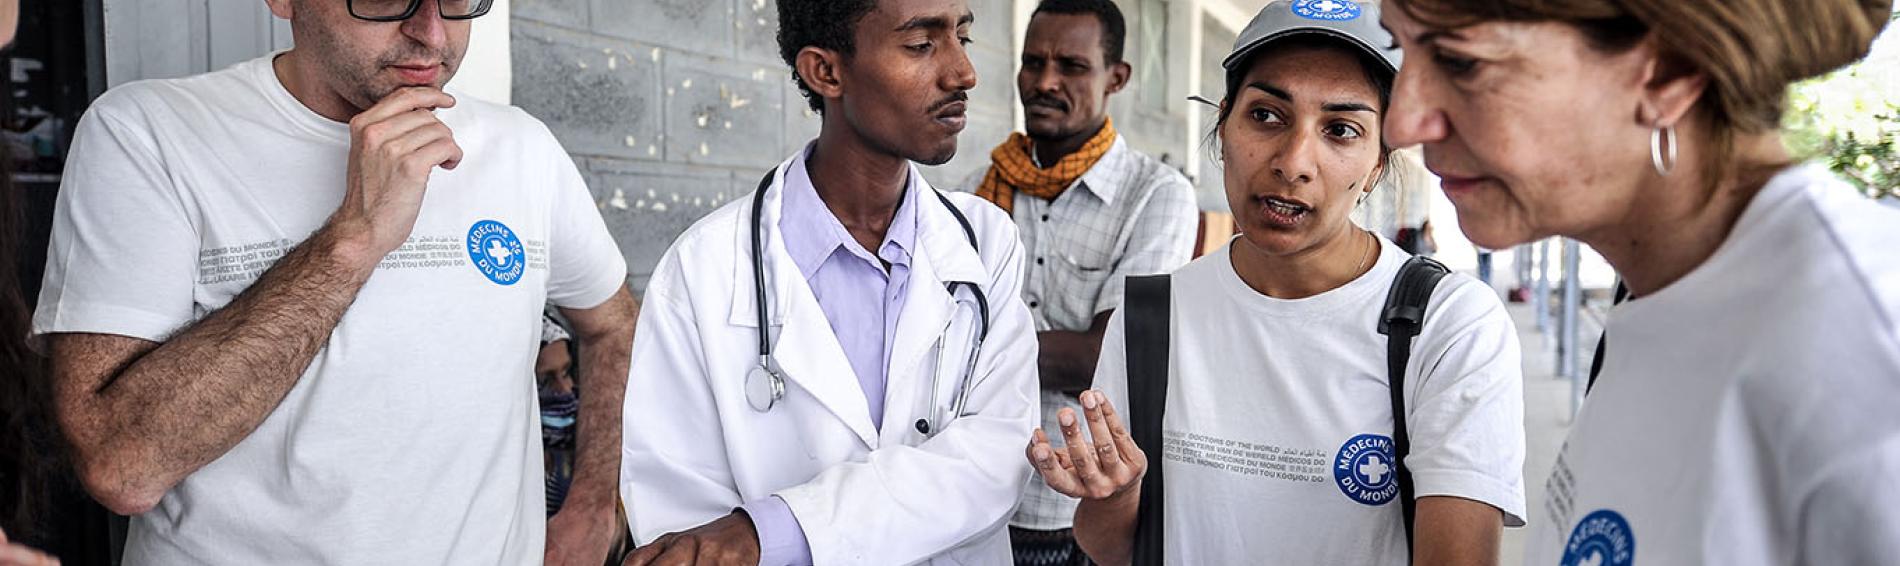 Ärzte der Welt-Mitarbeiter besprechen sich mit dem Personal eines Gesundheitszentrums in Äthiopien. Foto: Quentin Top